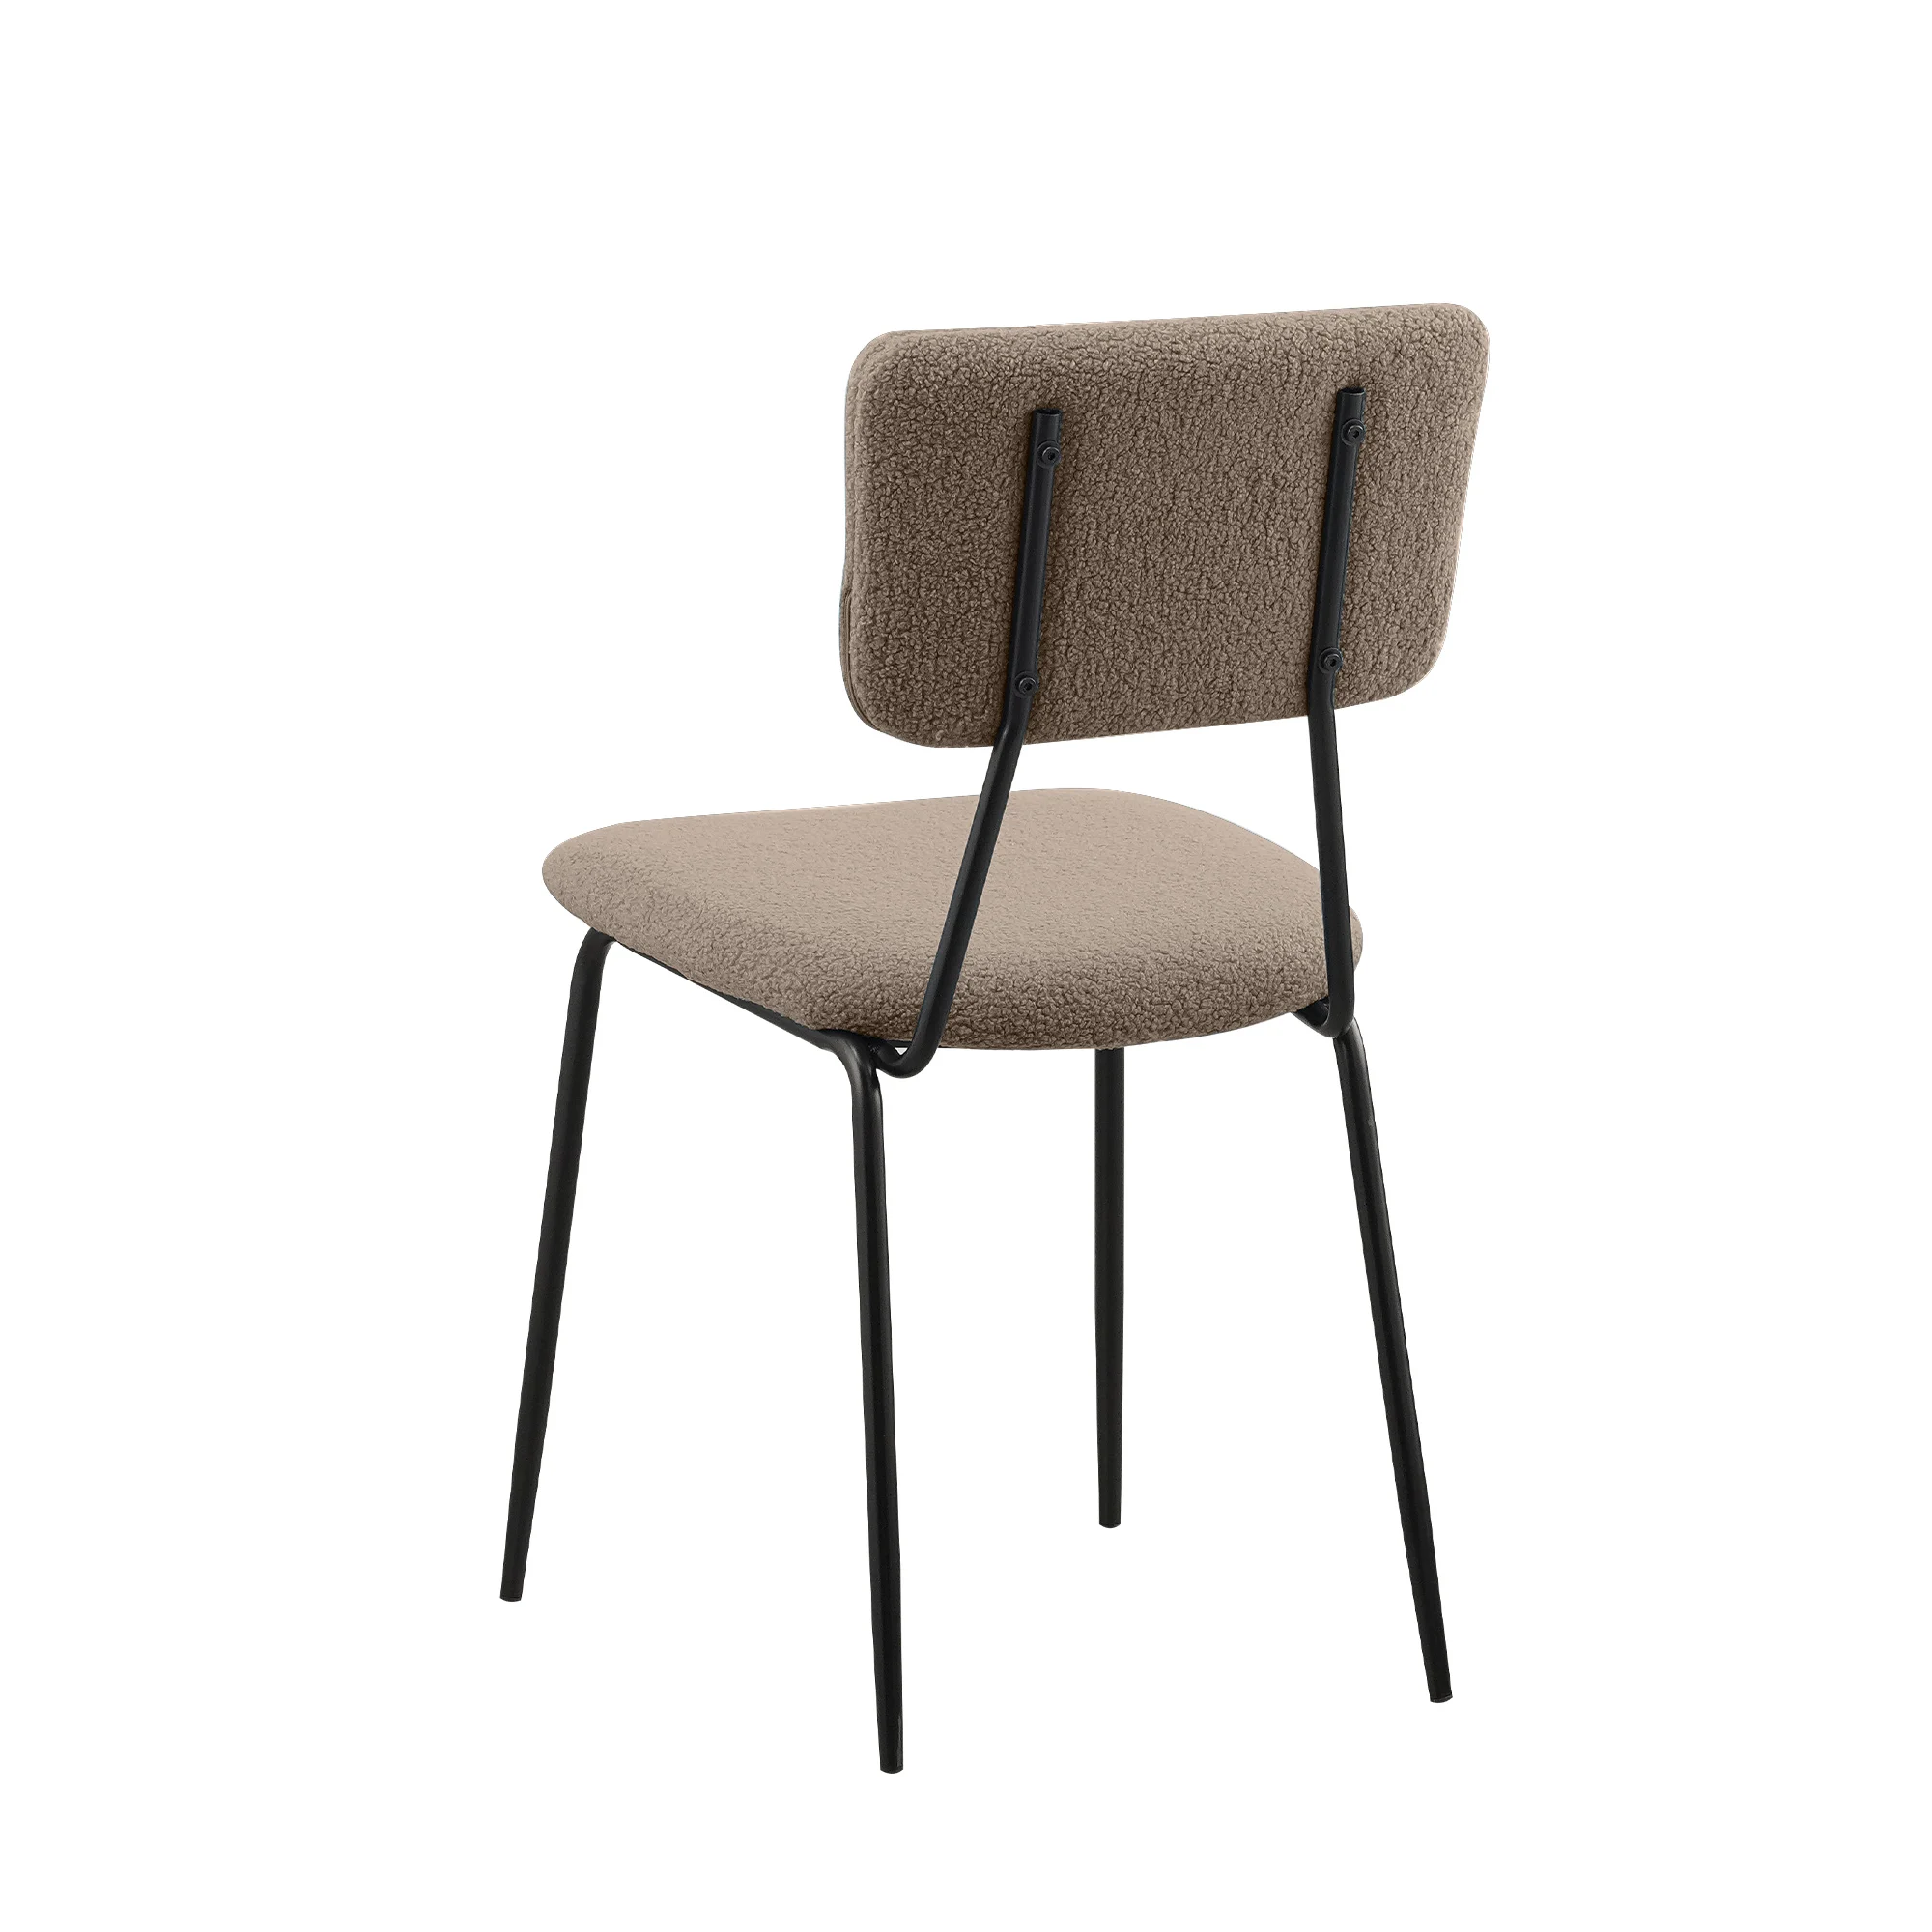 Набор из 6 стульев для столовой, удобные функциональные стулья со спинкой, обитой искусственным плюшем, и хромированными ножками, кухонные приставные стулья 1